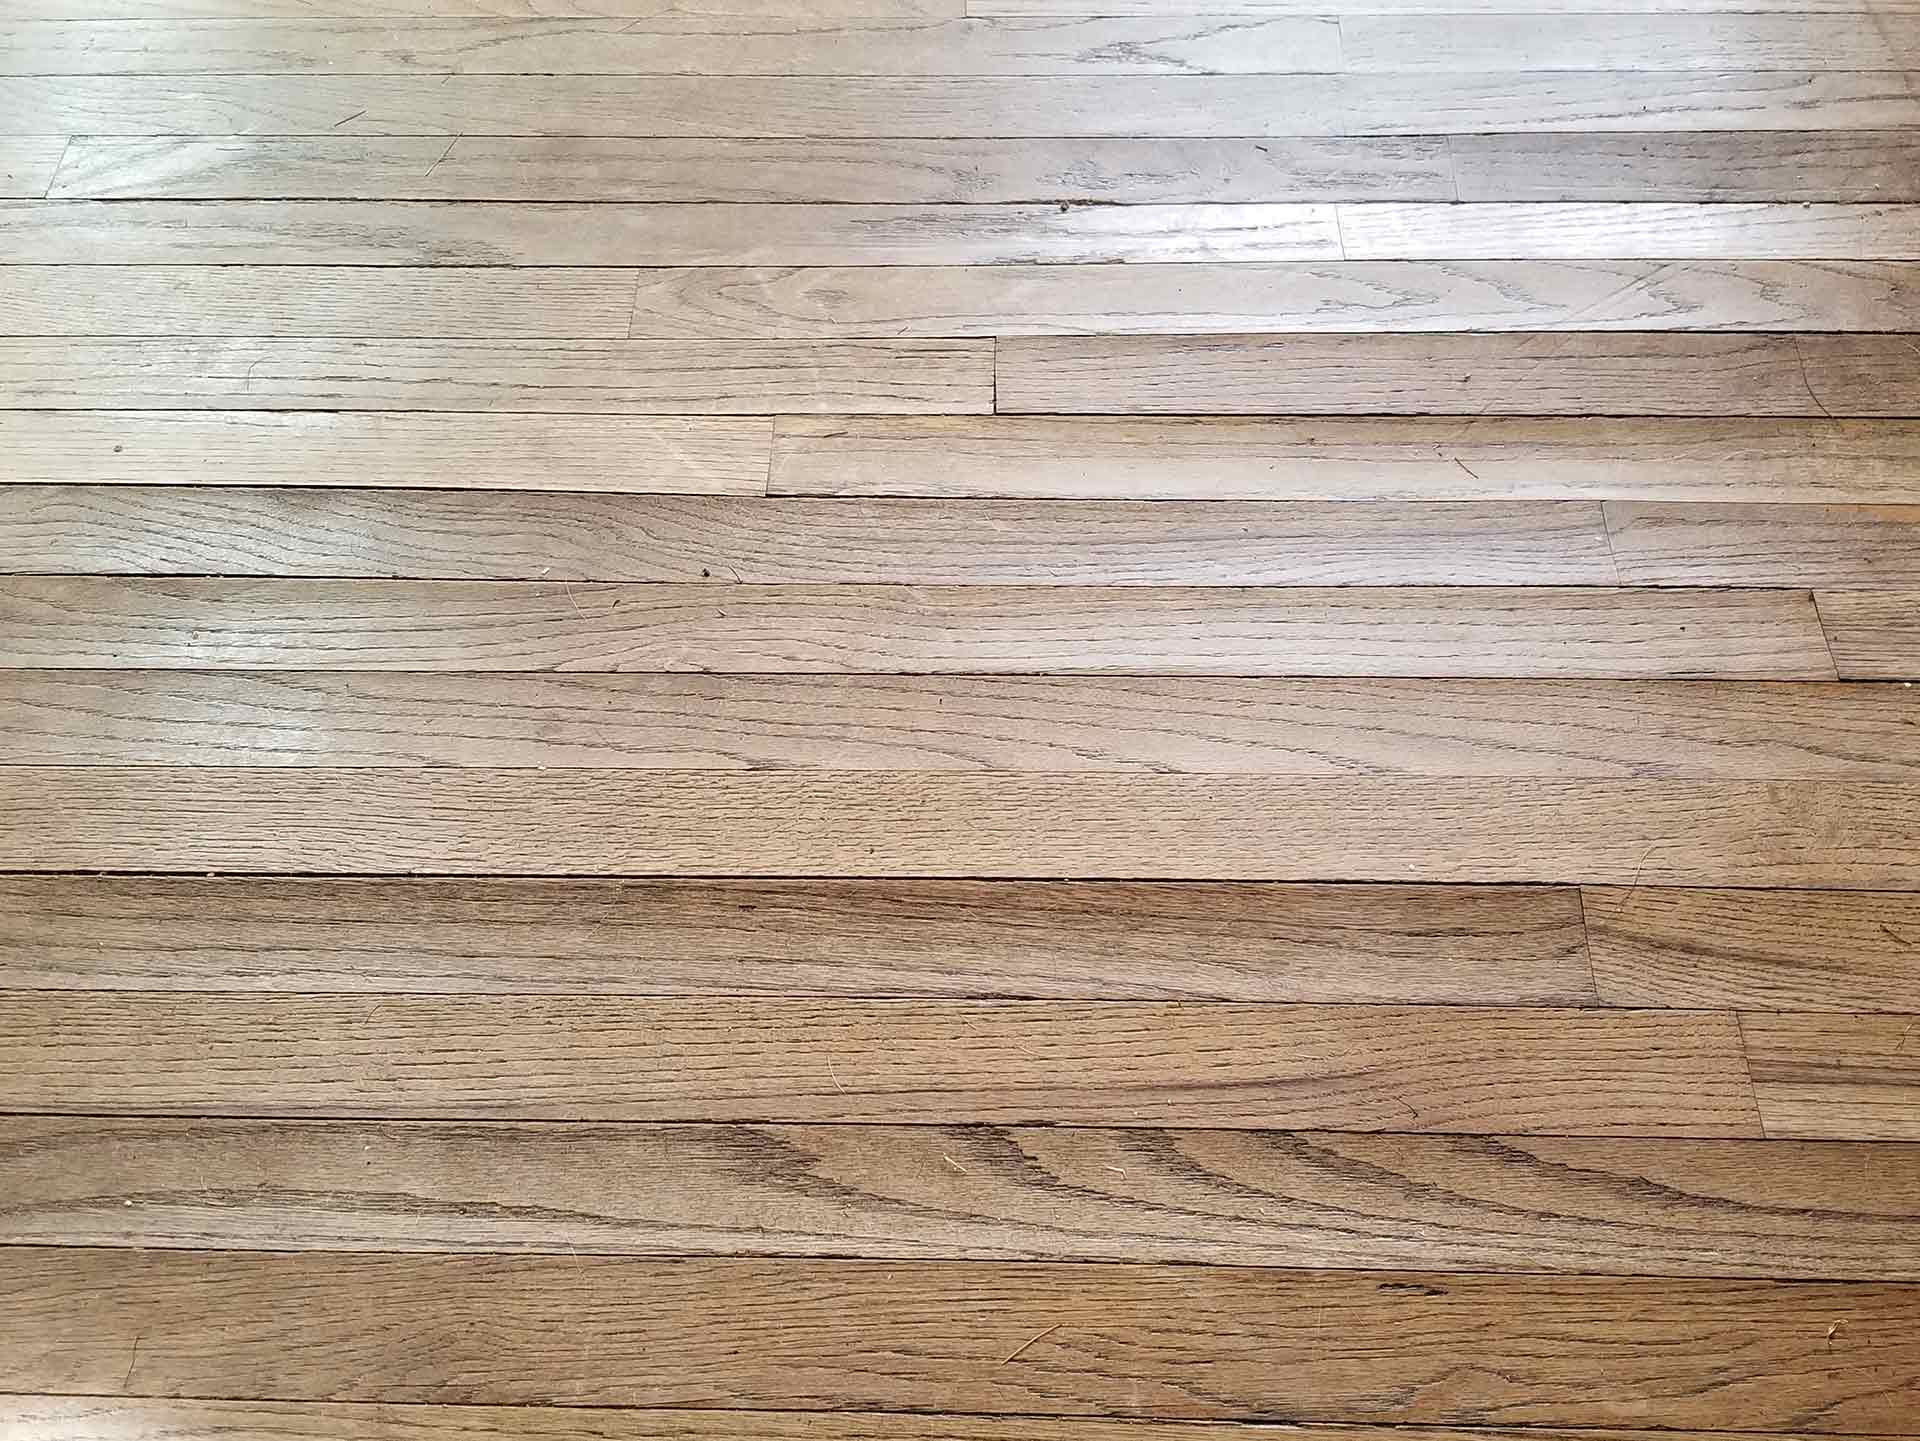 buckling wood floors